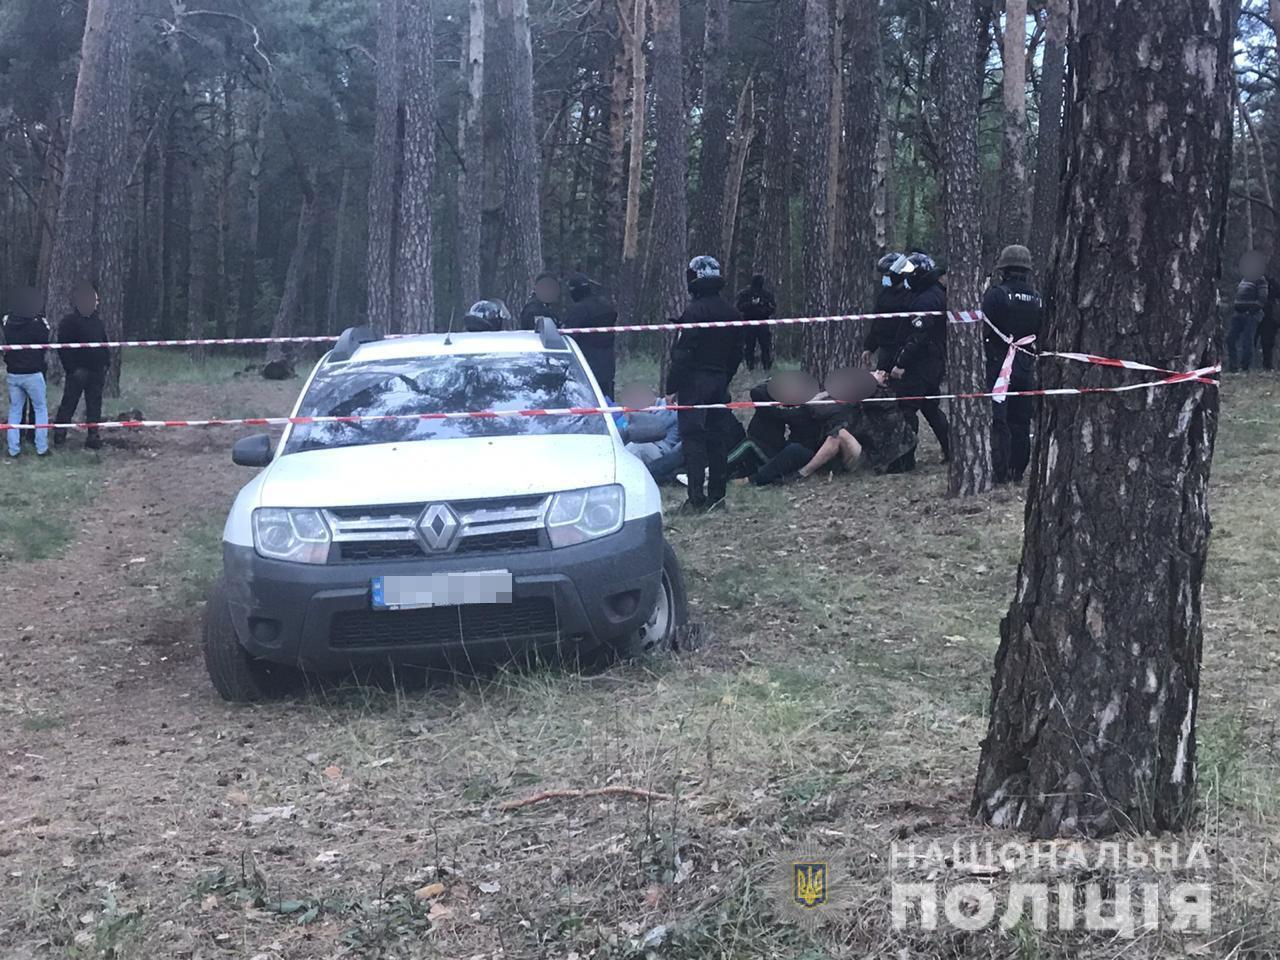 На Харківщині поліція затримала учасників громадської організації